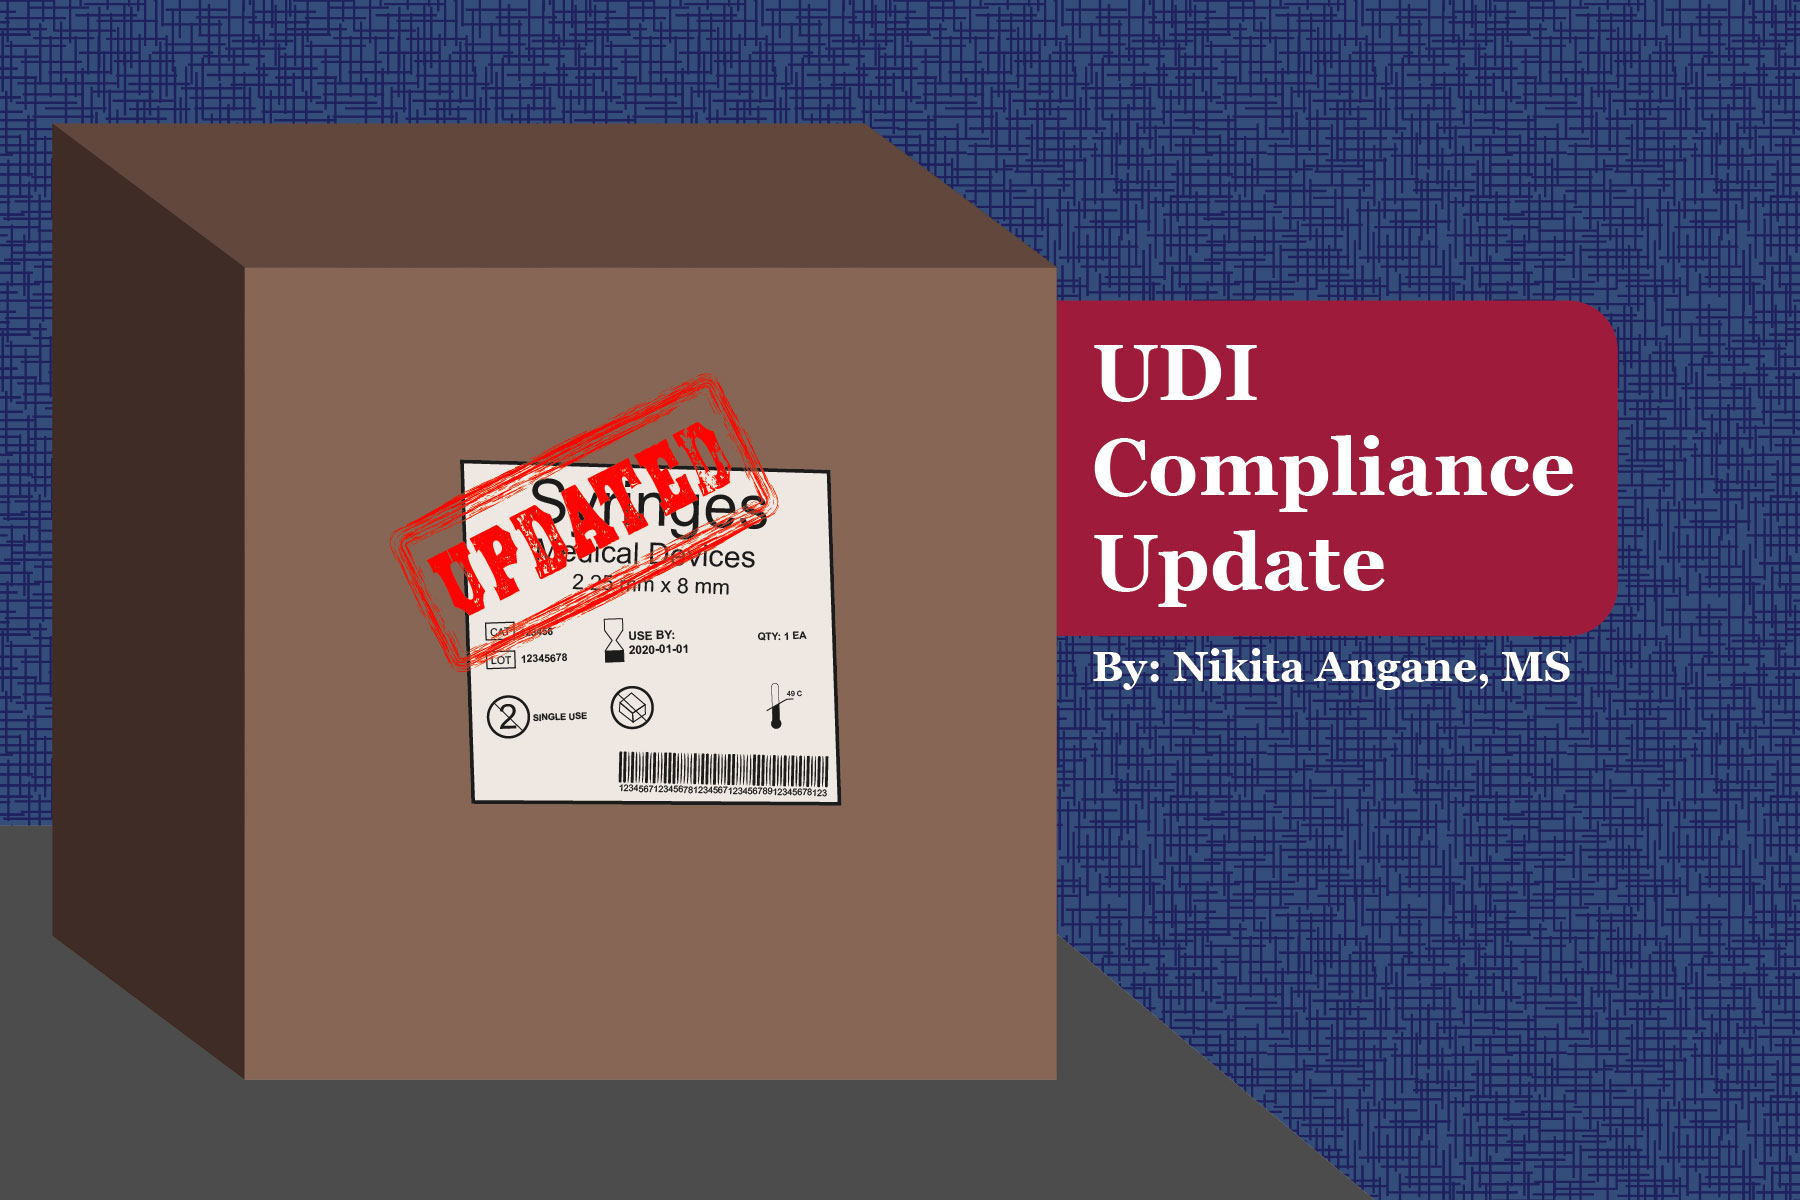 UDI Compliance Update